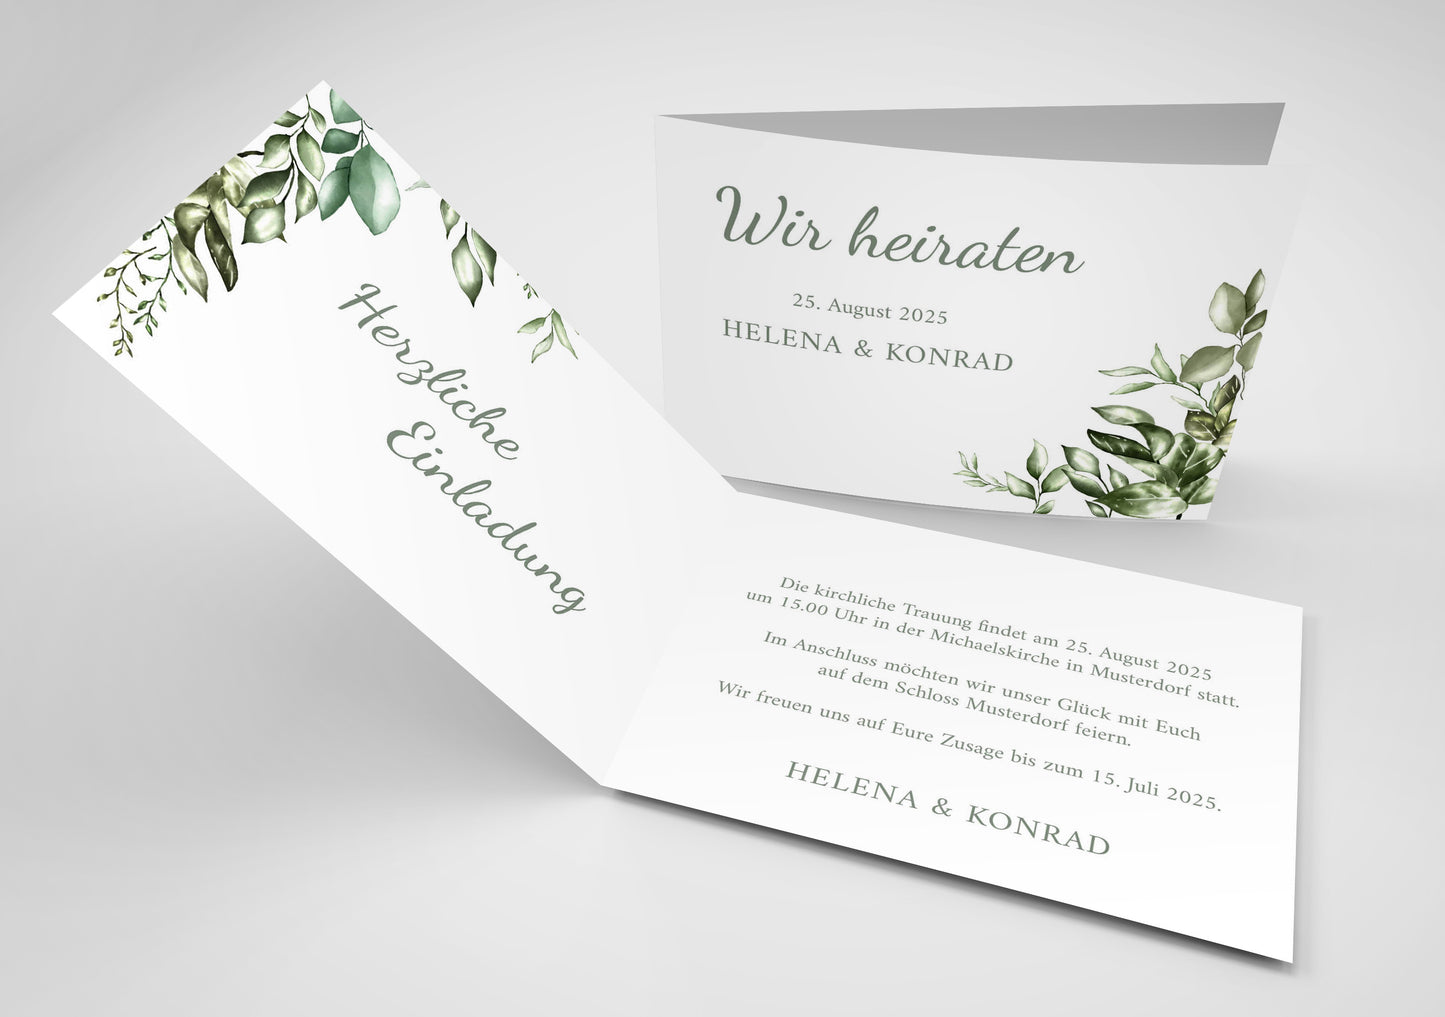 Einladungskarte zur Hochzeit: Green Wedding Individuelle Einladung